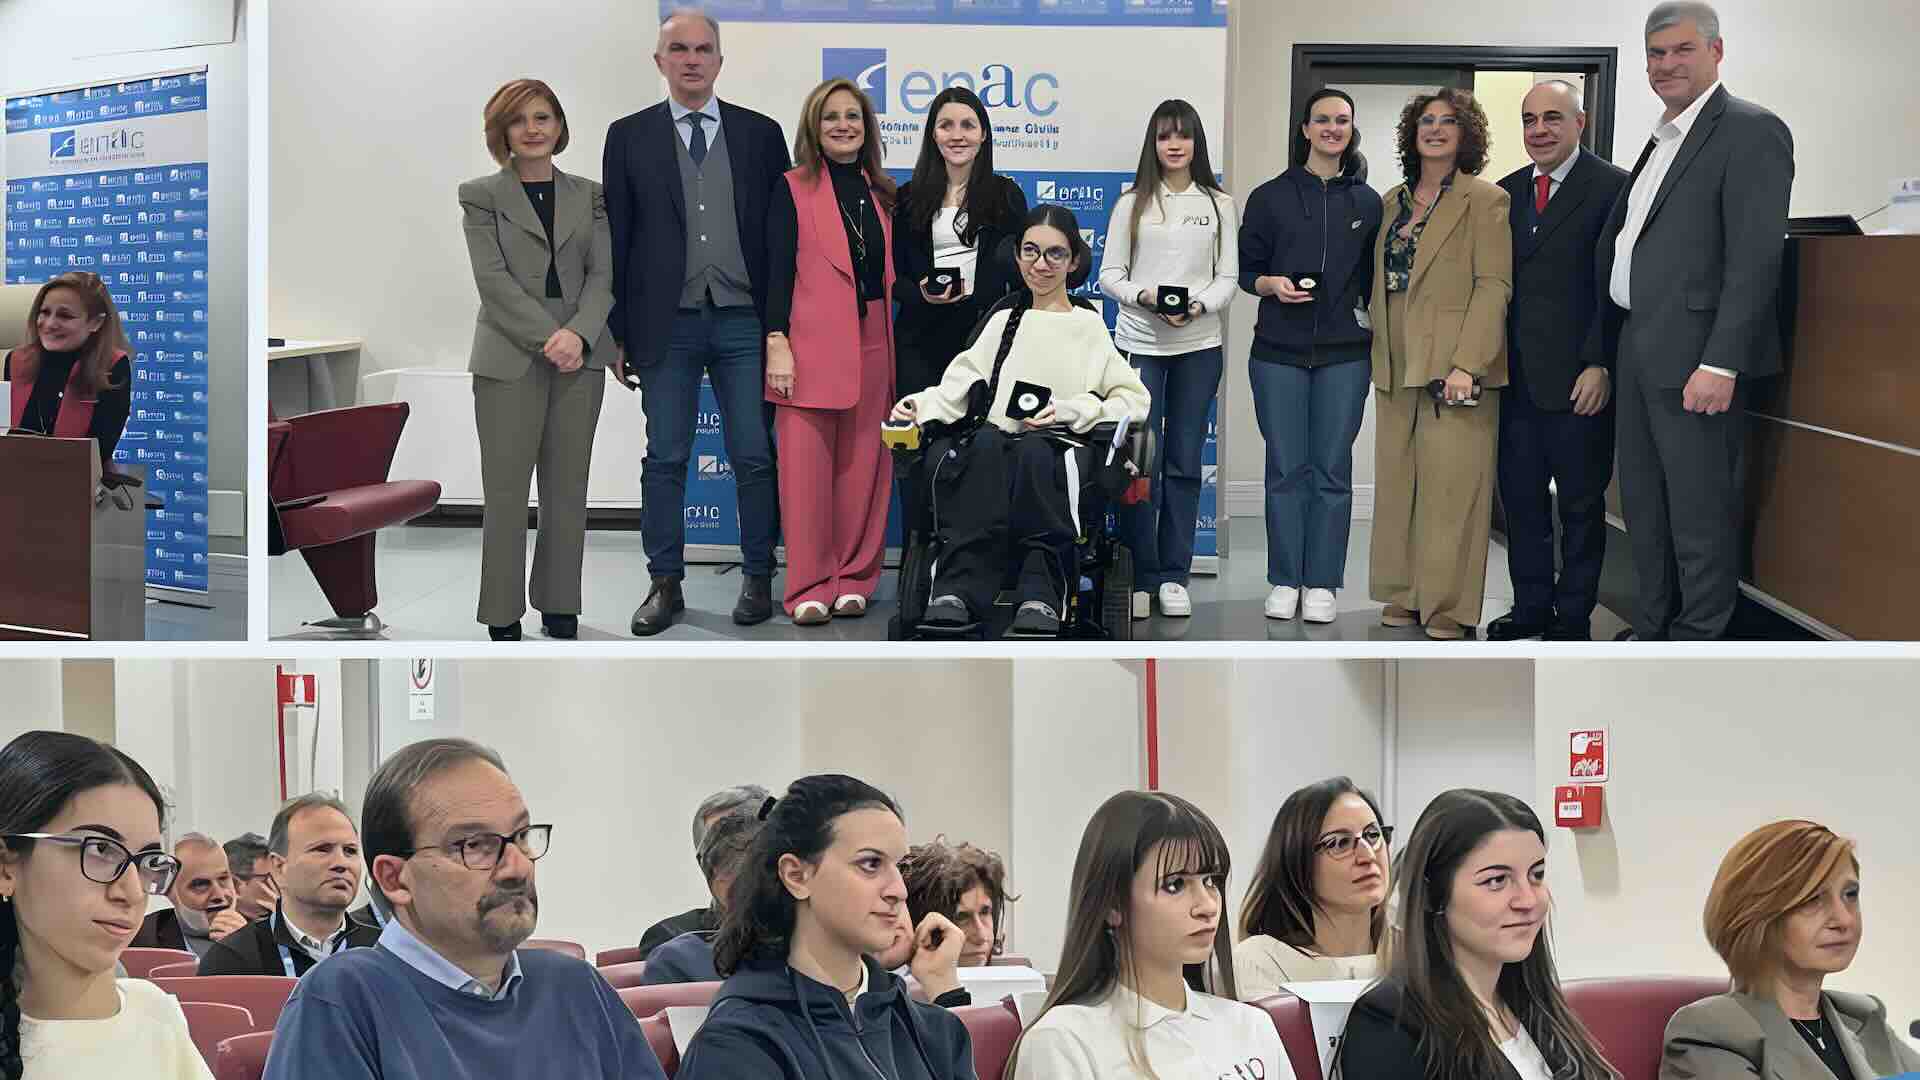 Enac premia le donne pilota con il premio Fiorenza de Bernardi